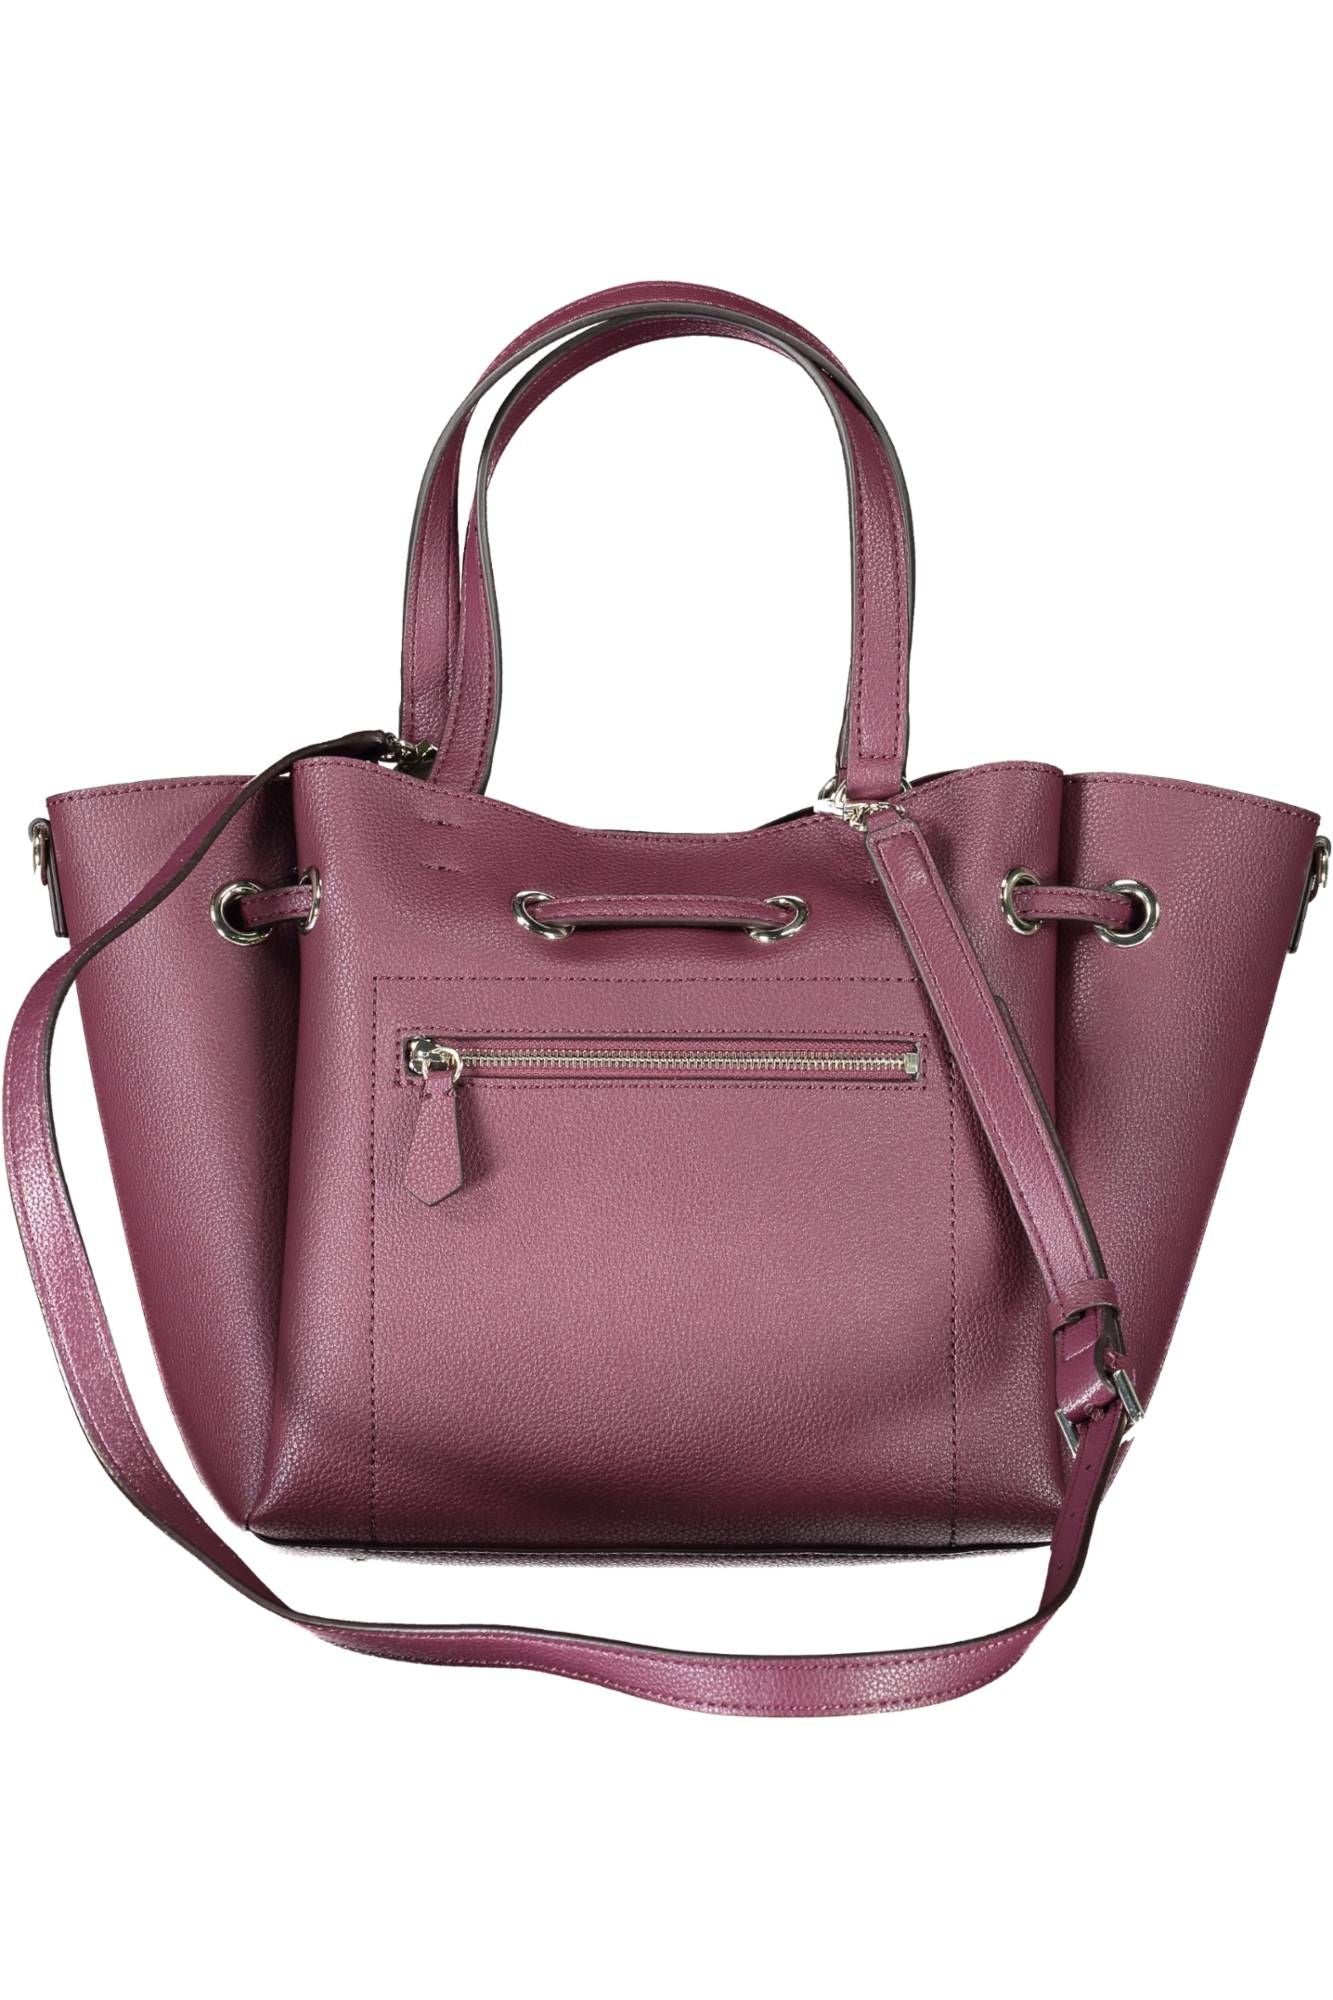 Guess Jeans Elegant Purple Handbag with Versatile Straps